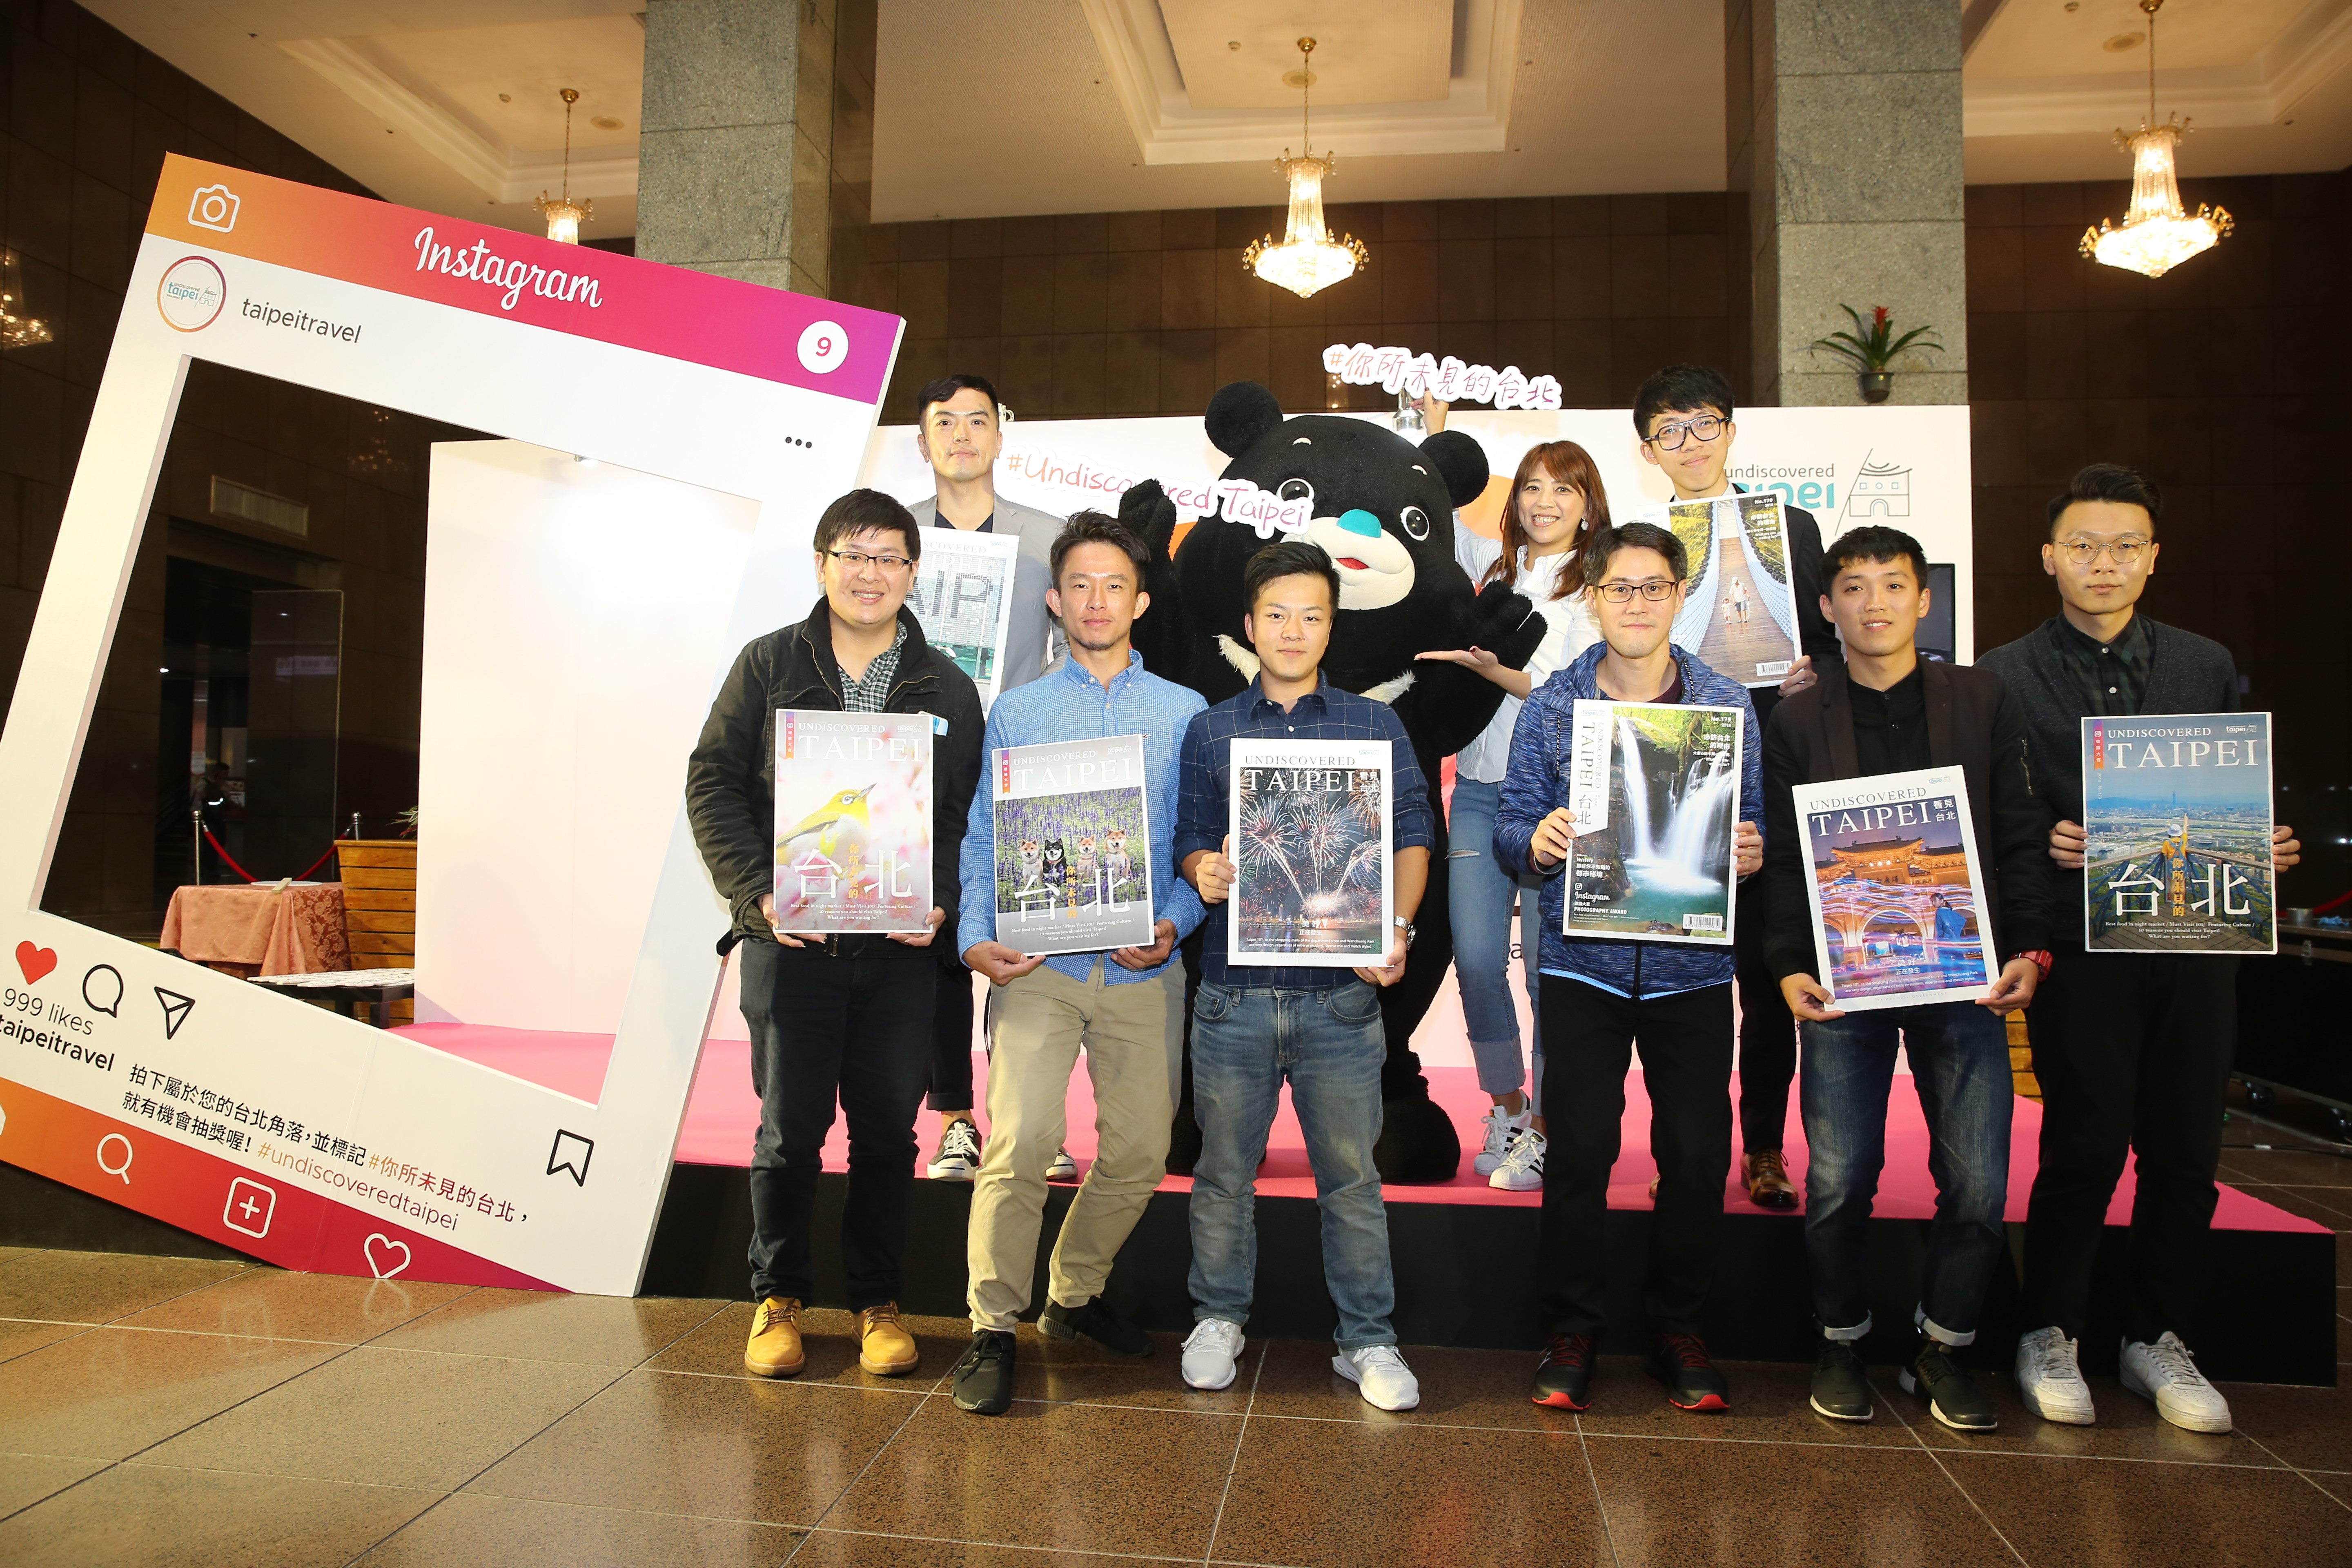 台北市观光传播局於今(22)日开始举办为期6天的快闪IG摄影展，以「Undiscovered Taipei你所未见的台北」为题，将民众投稿台北旅游网IG帐号照片精彩呈现市政大厅1楼。